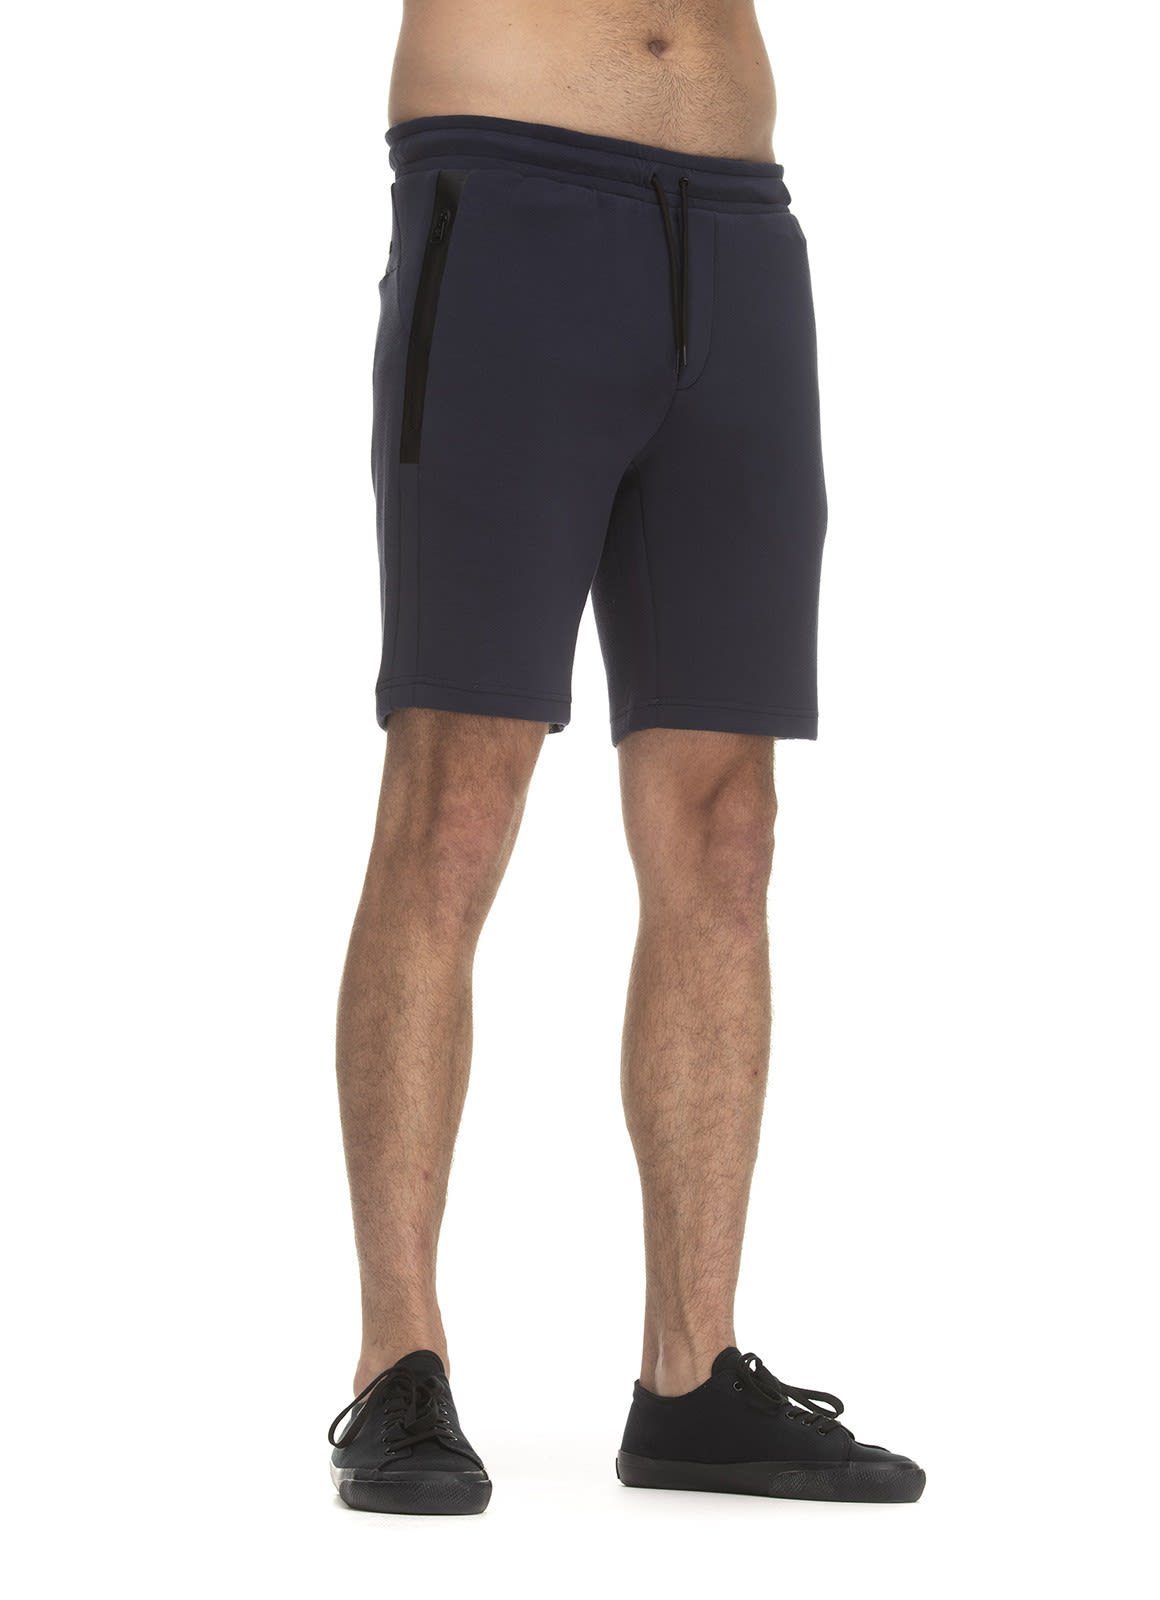 M Herren Satom Ragwear Shorts Shorts Ragwear Strandshorts Navy